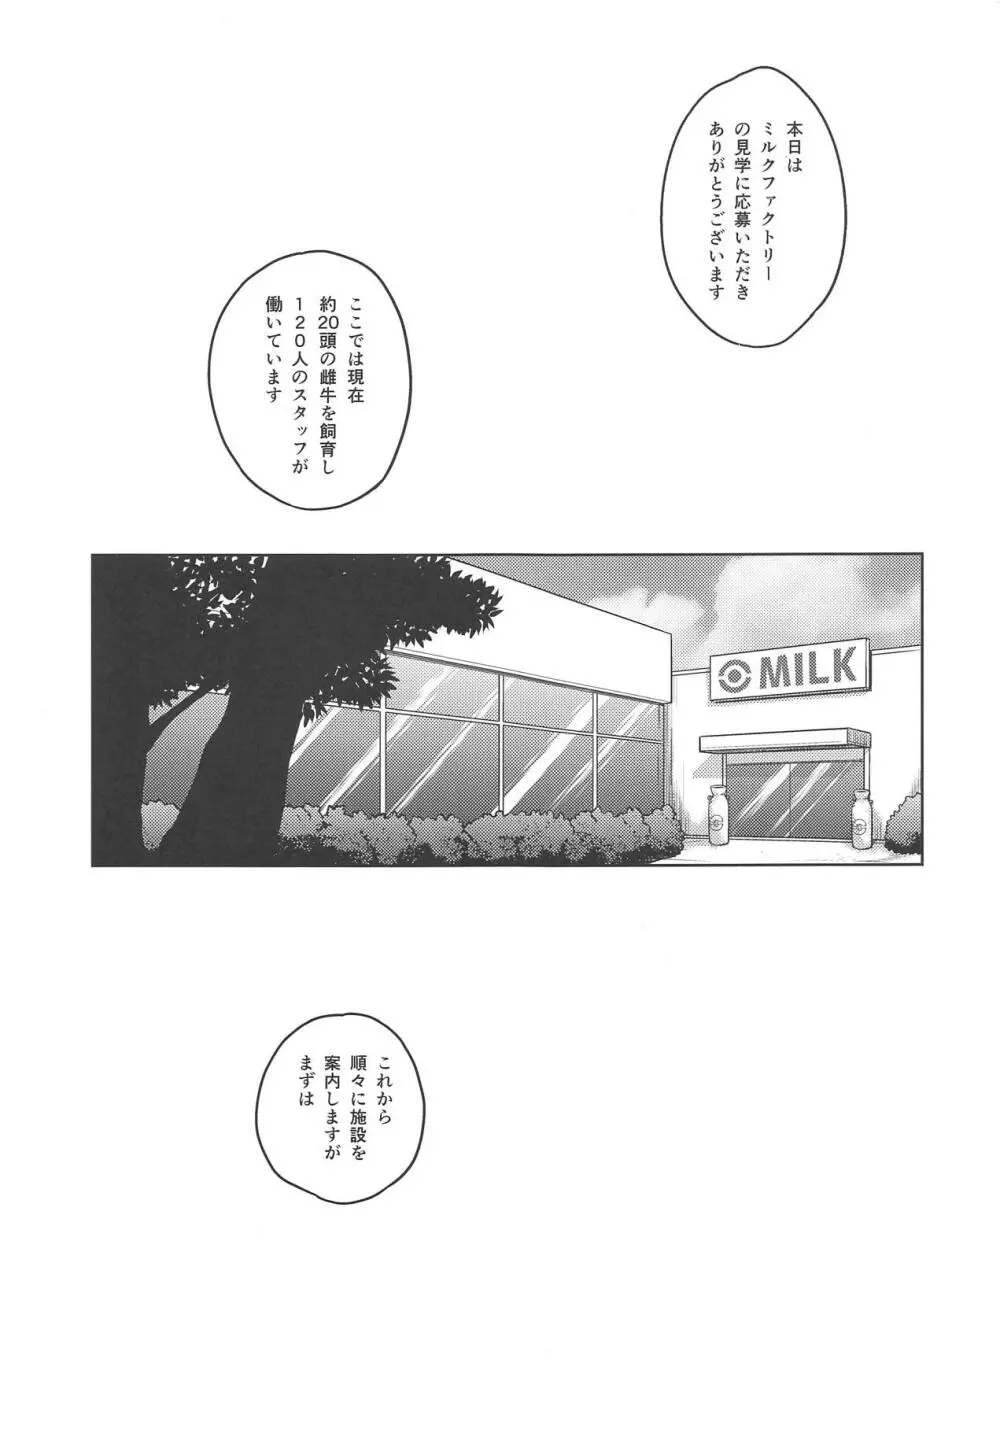 オカルトマニアちゃんのミルクファクトリー 準備中 - page3